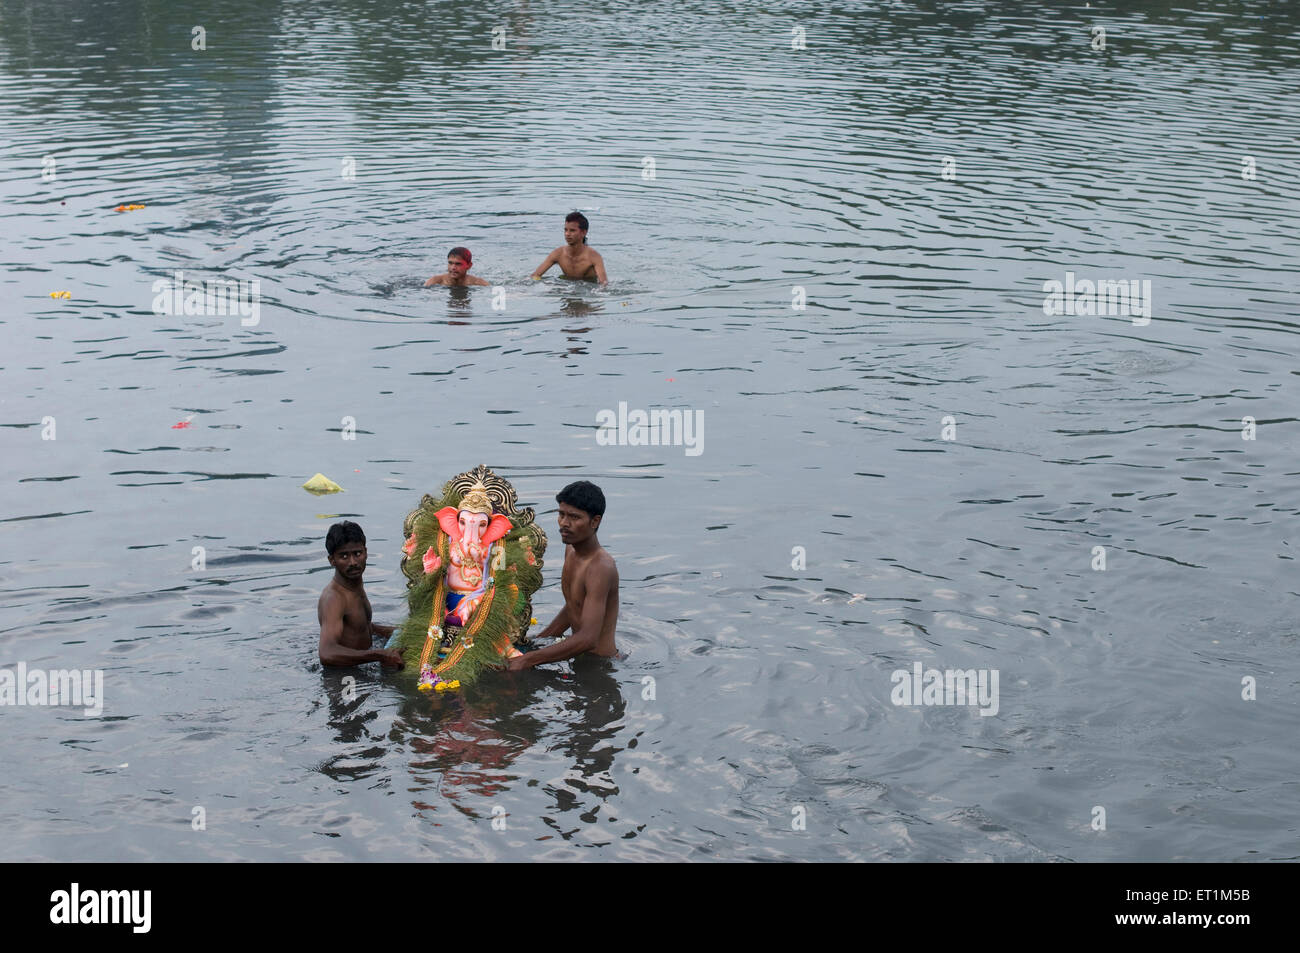 Ein kleines Idol von Lord Ganesh ergriffen durch zwei MannSchönheitschirurgie Untertauchen im Wasser Pune Indien Asien Stockfoto